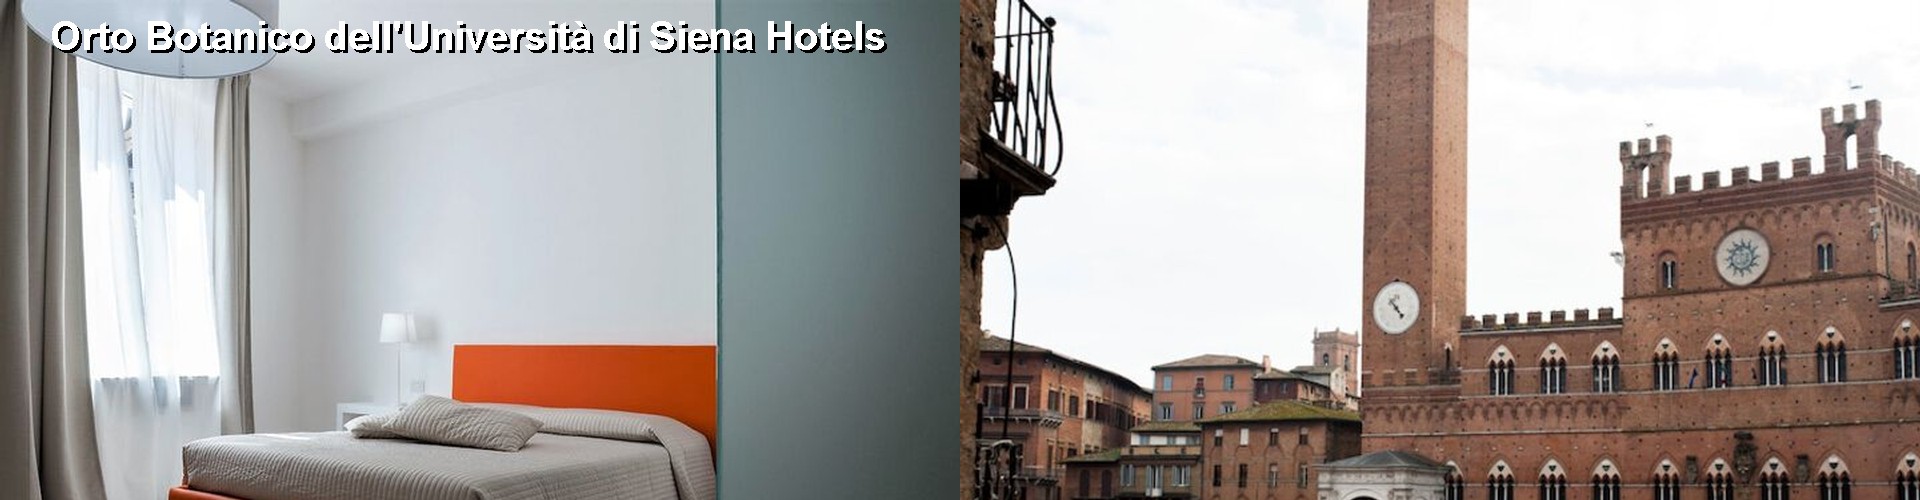 5 Best Hotels near Orto Botanico dell'Università di Siena